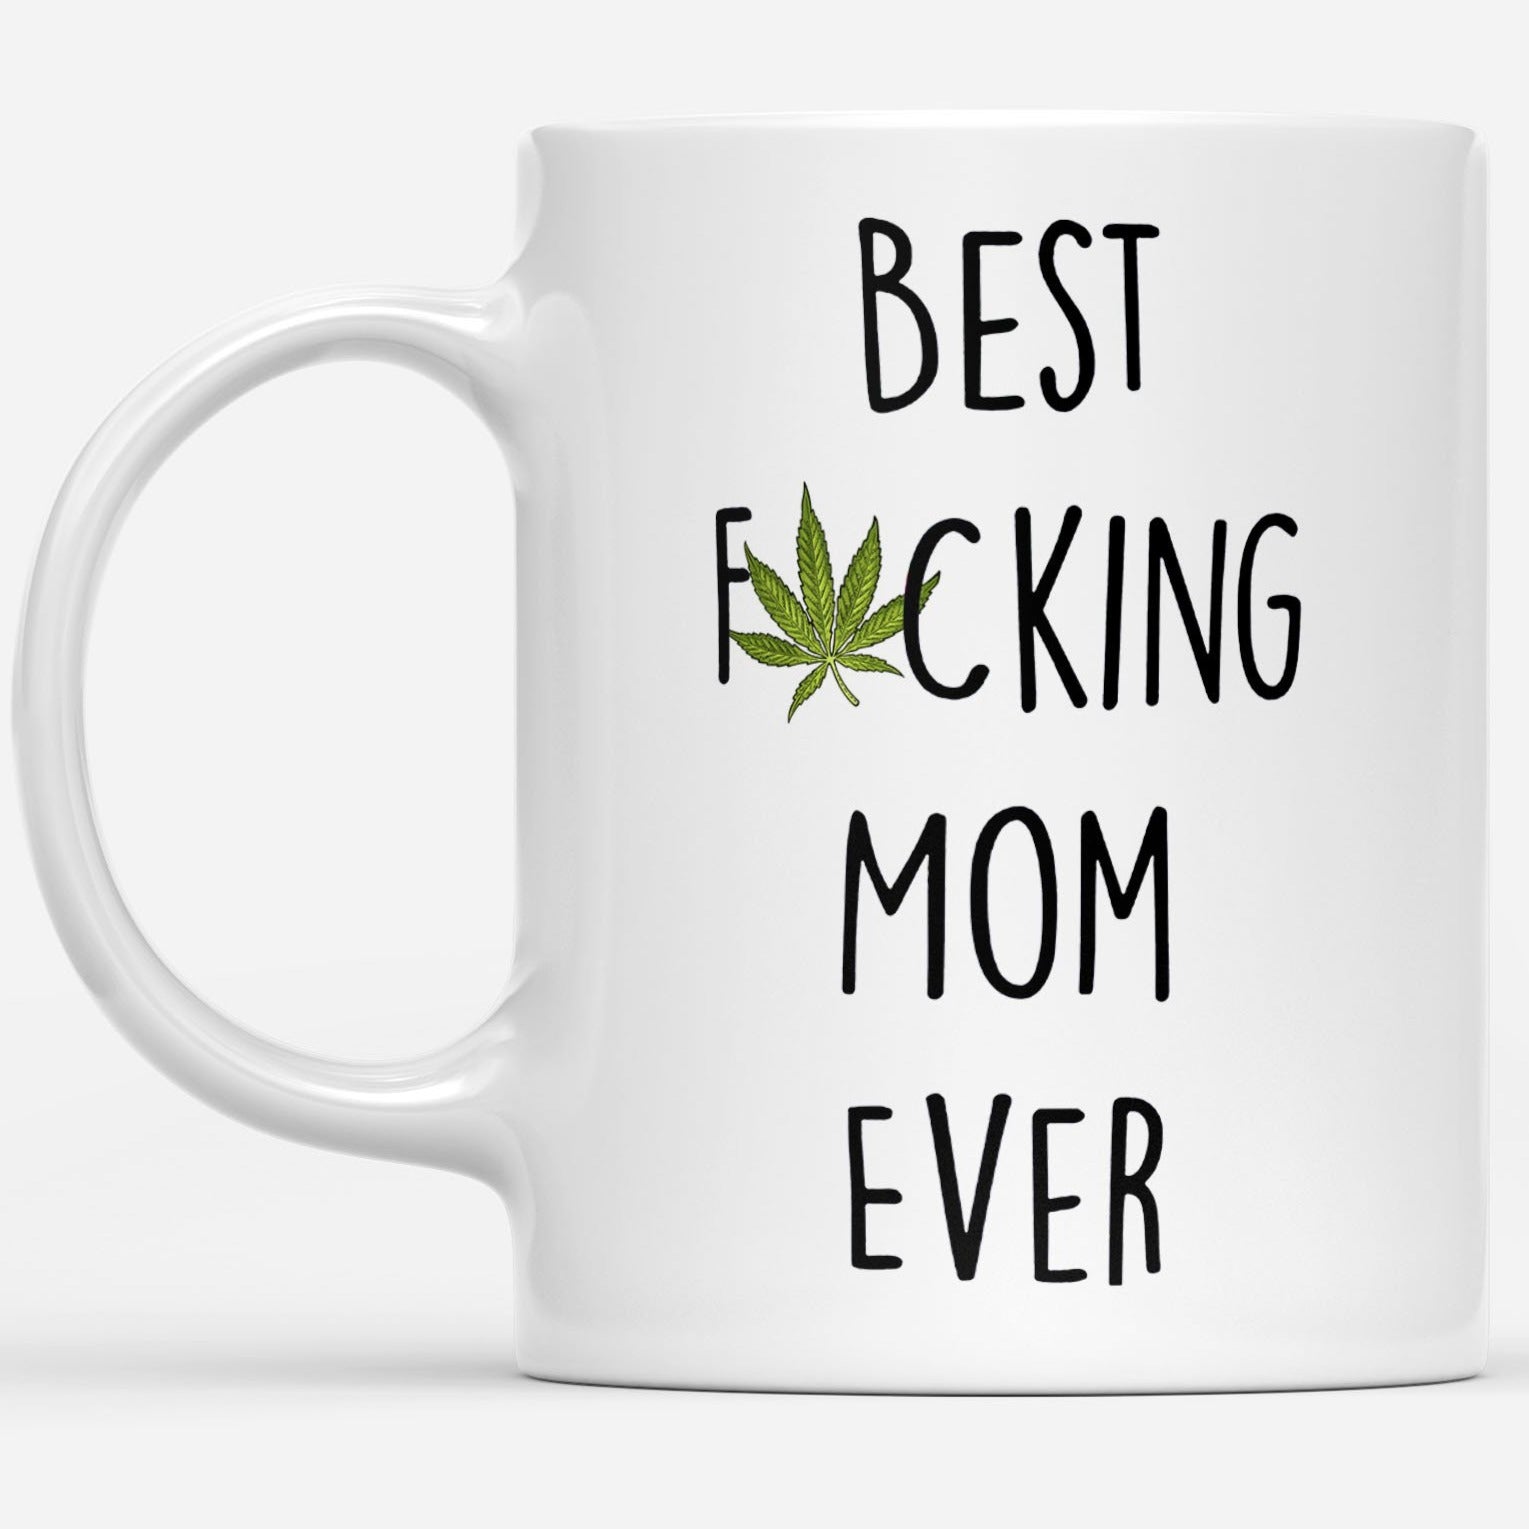 Best Mom Ever - Mothers Day Mug